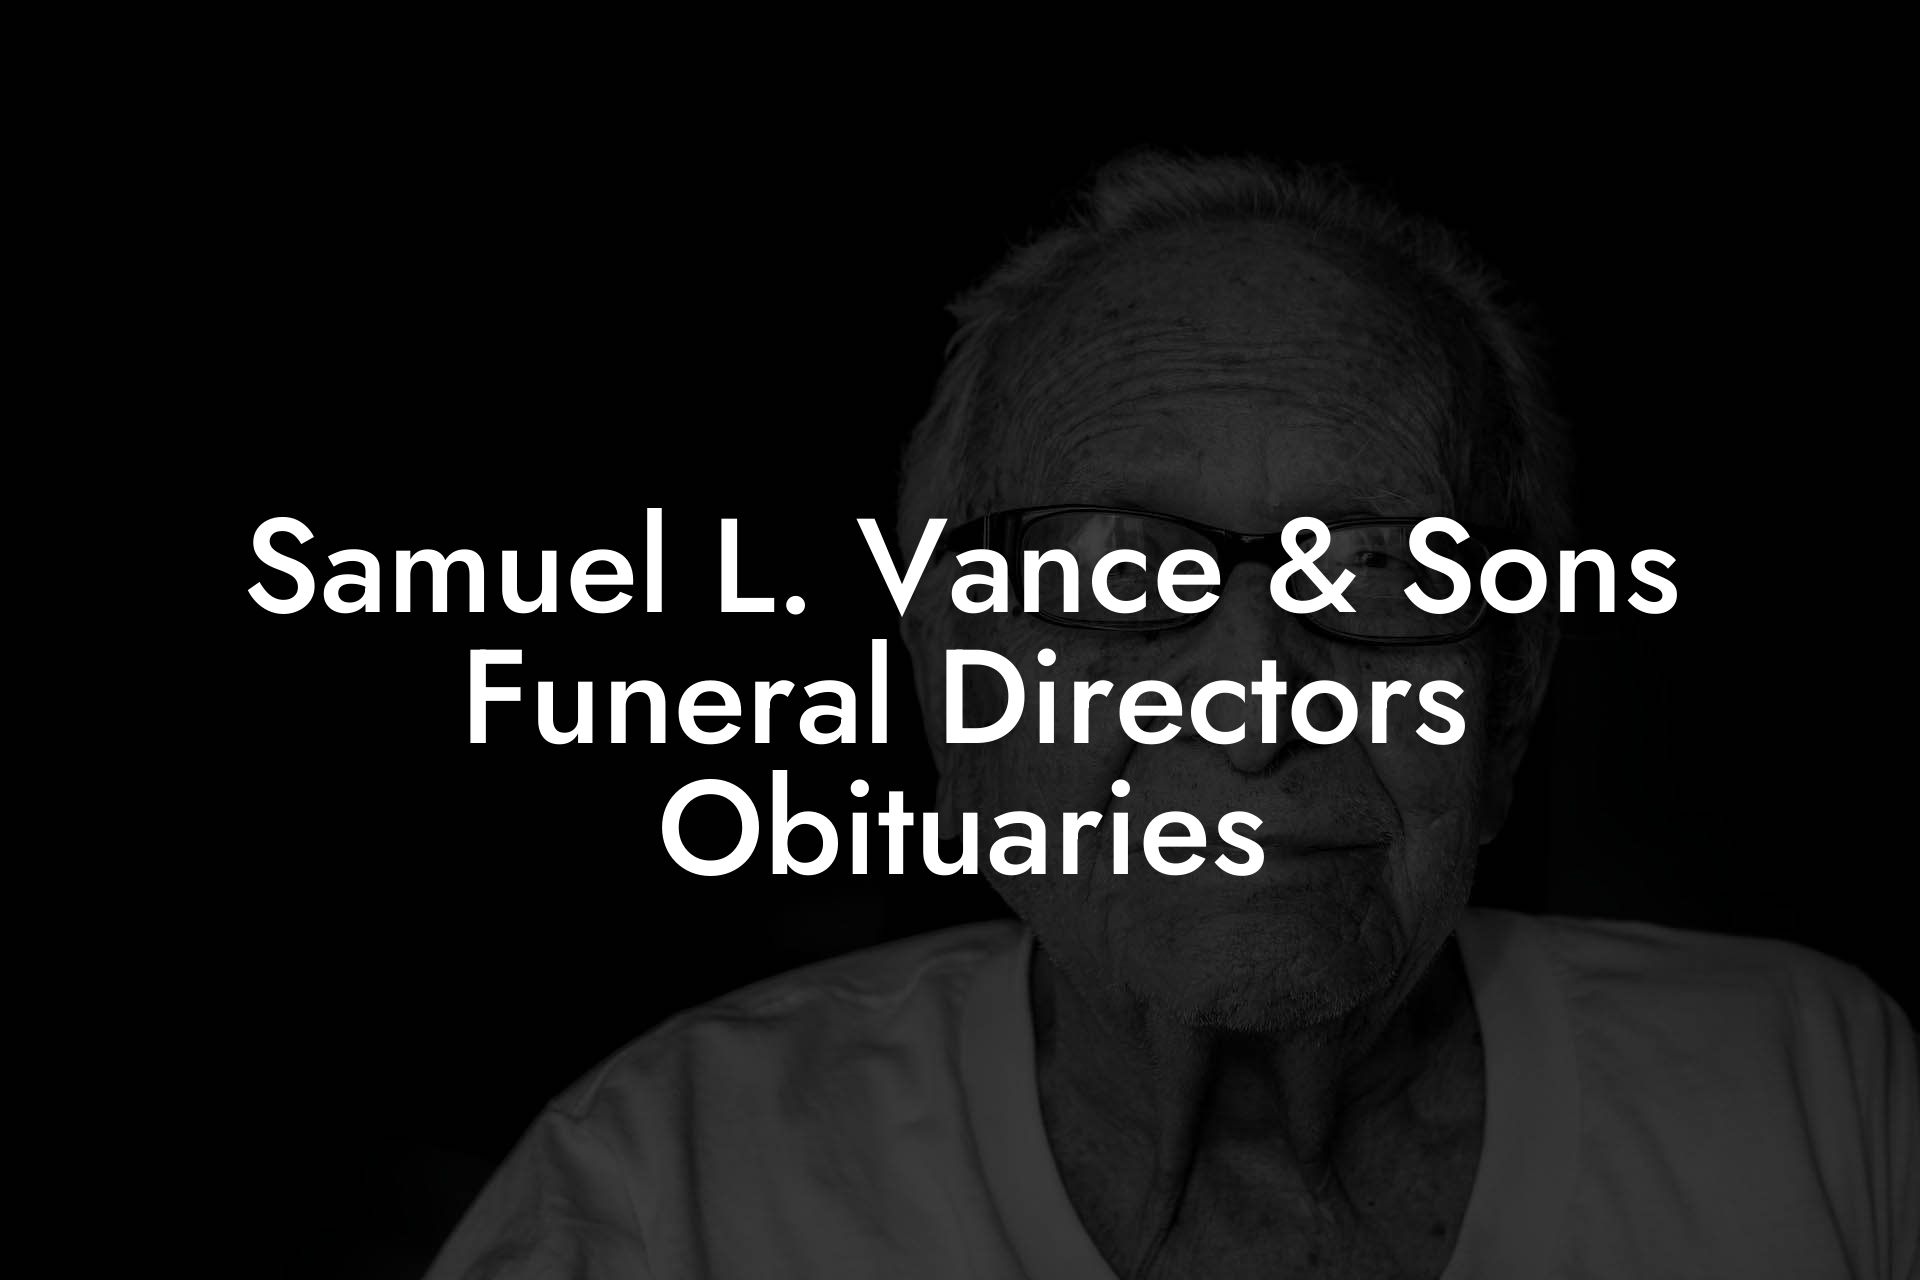 Samuel L. Vance & Sons Funeral Directors Obituaries